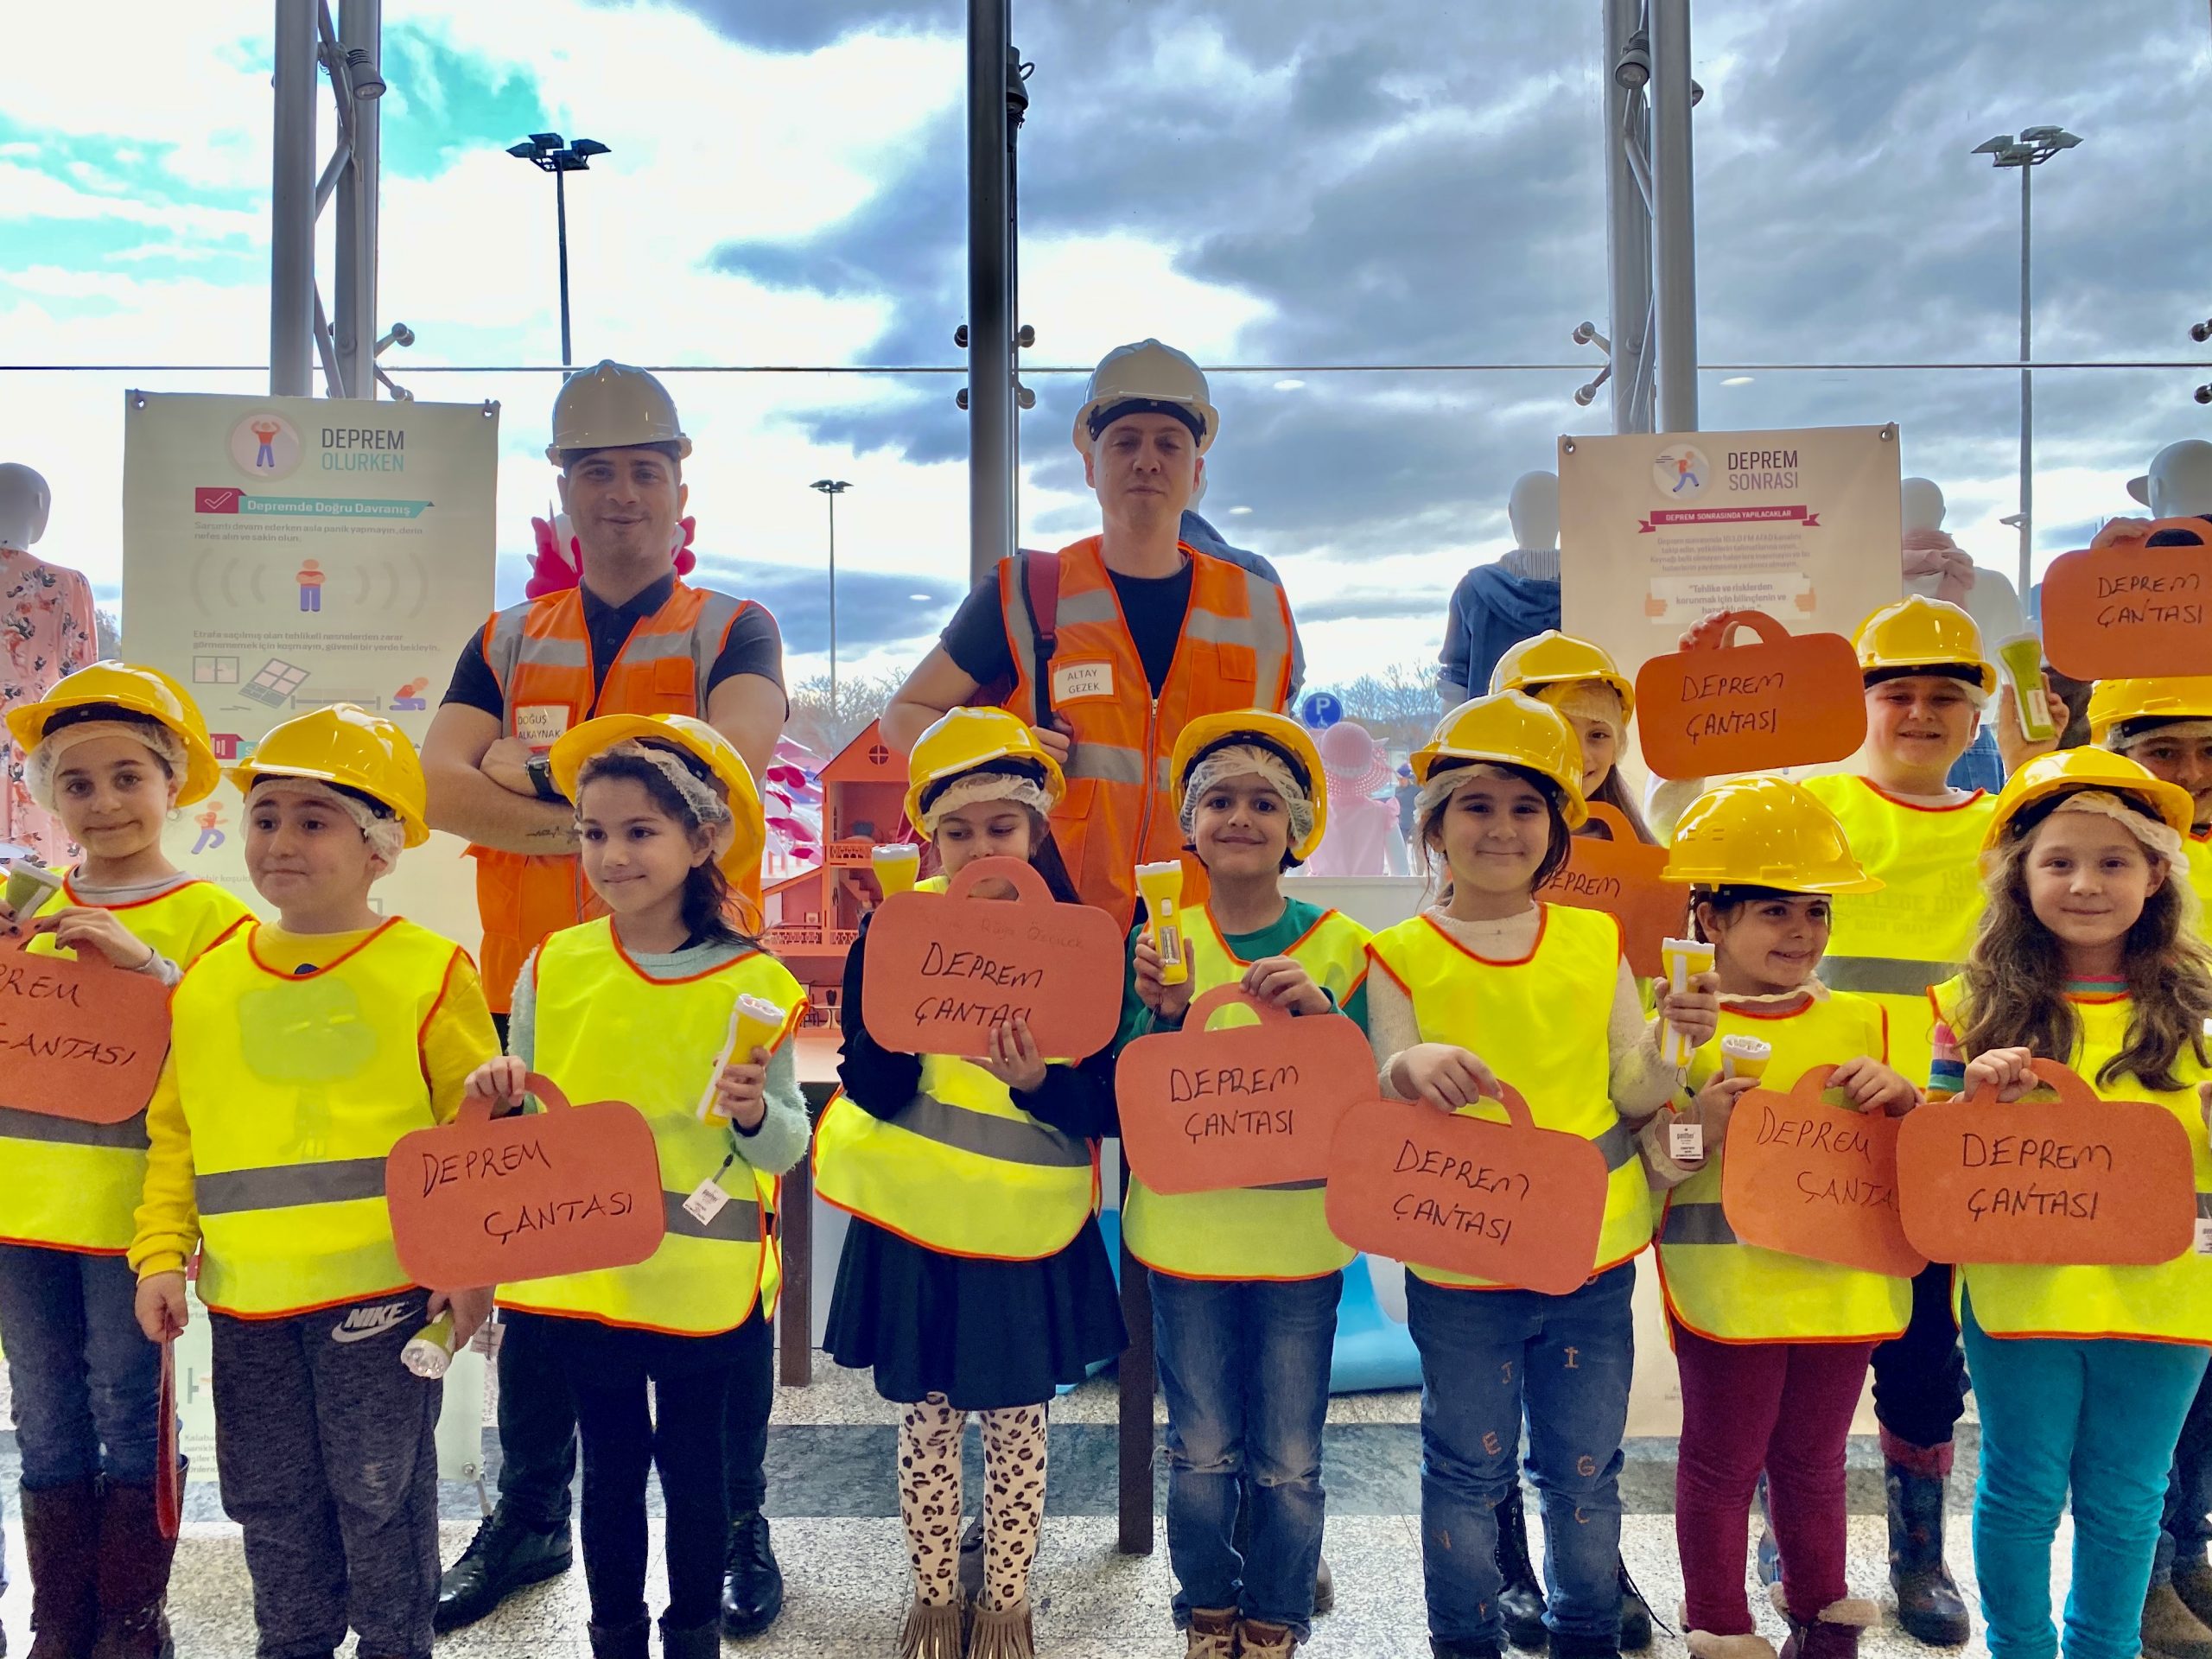 Özdilek İzmir AVM’ den Çocuklara Deprem Eğitimi ve Deprem Çantası Hazırlama Atölyesi